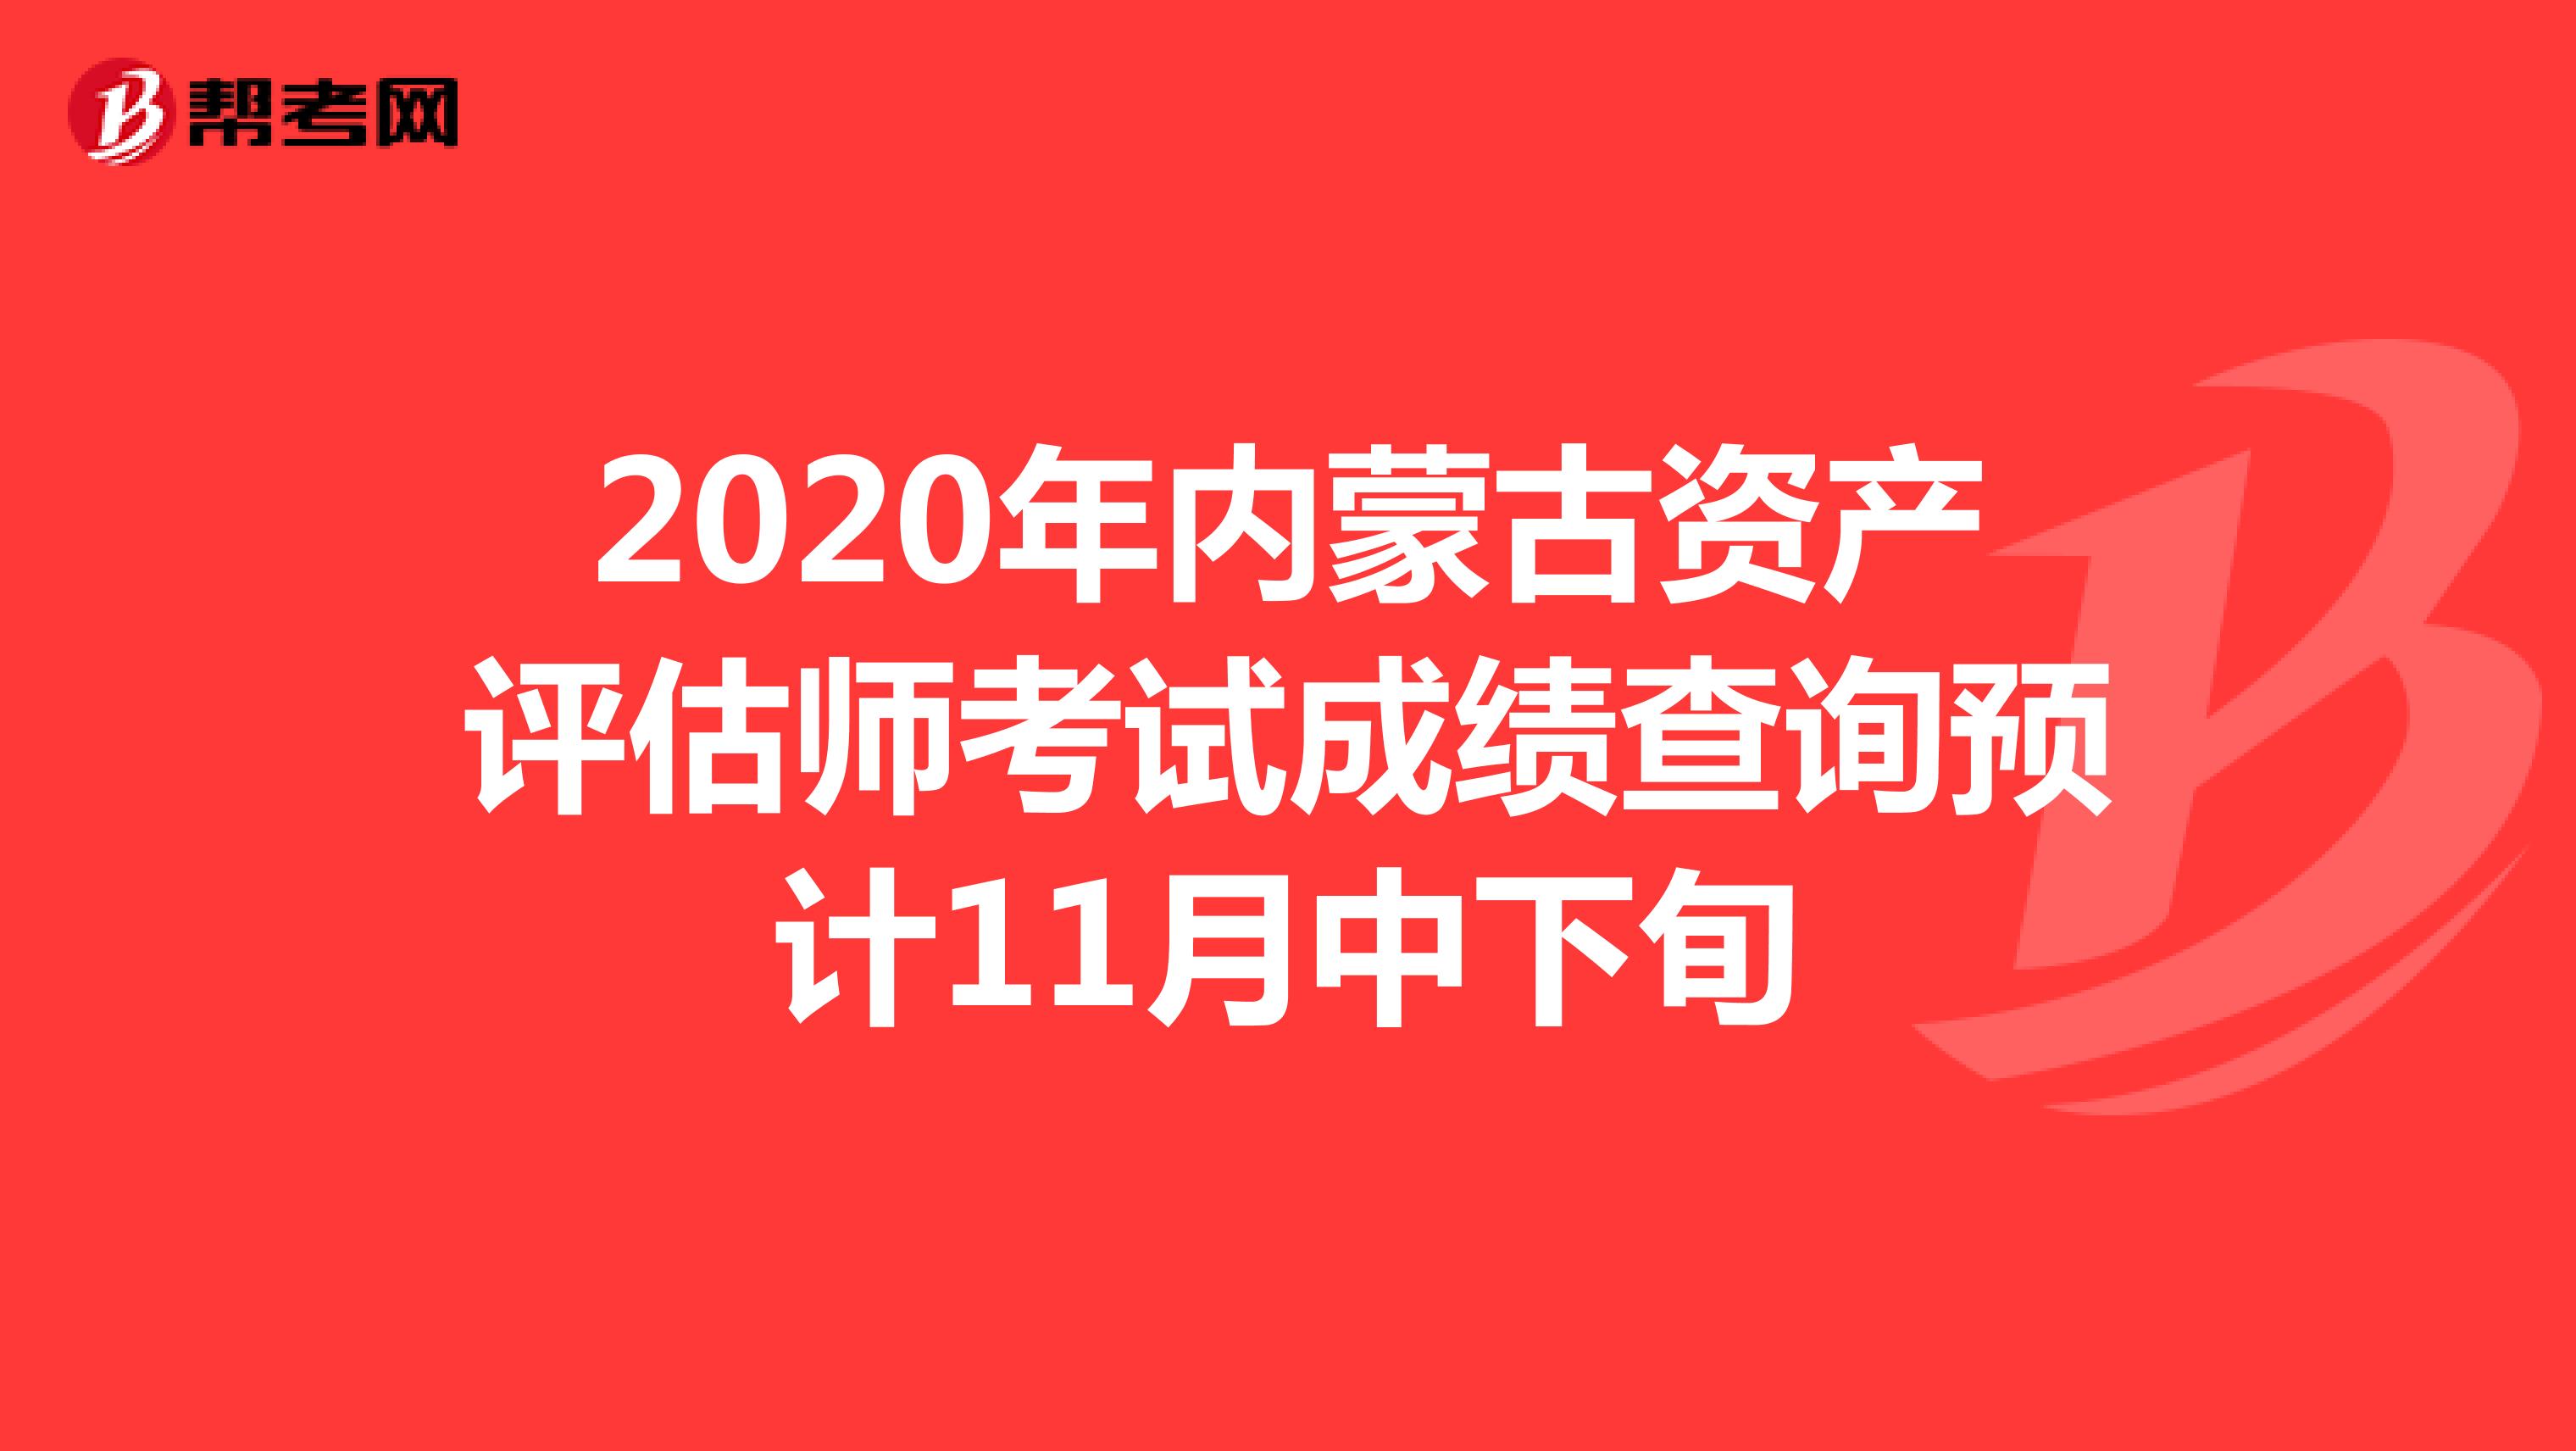 2020年内蒙古资产评估师考试成绩查询预计11月中下旬